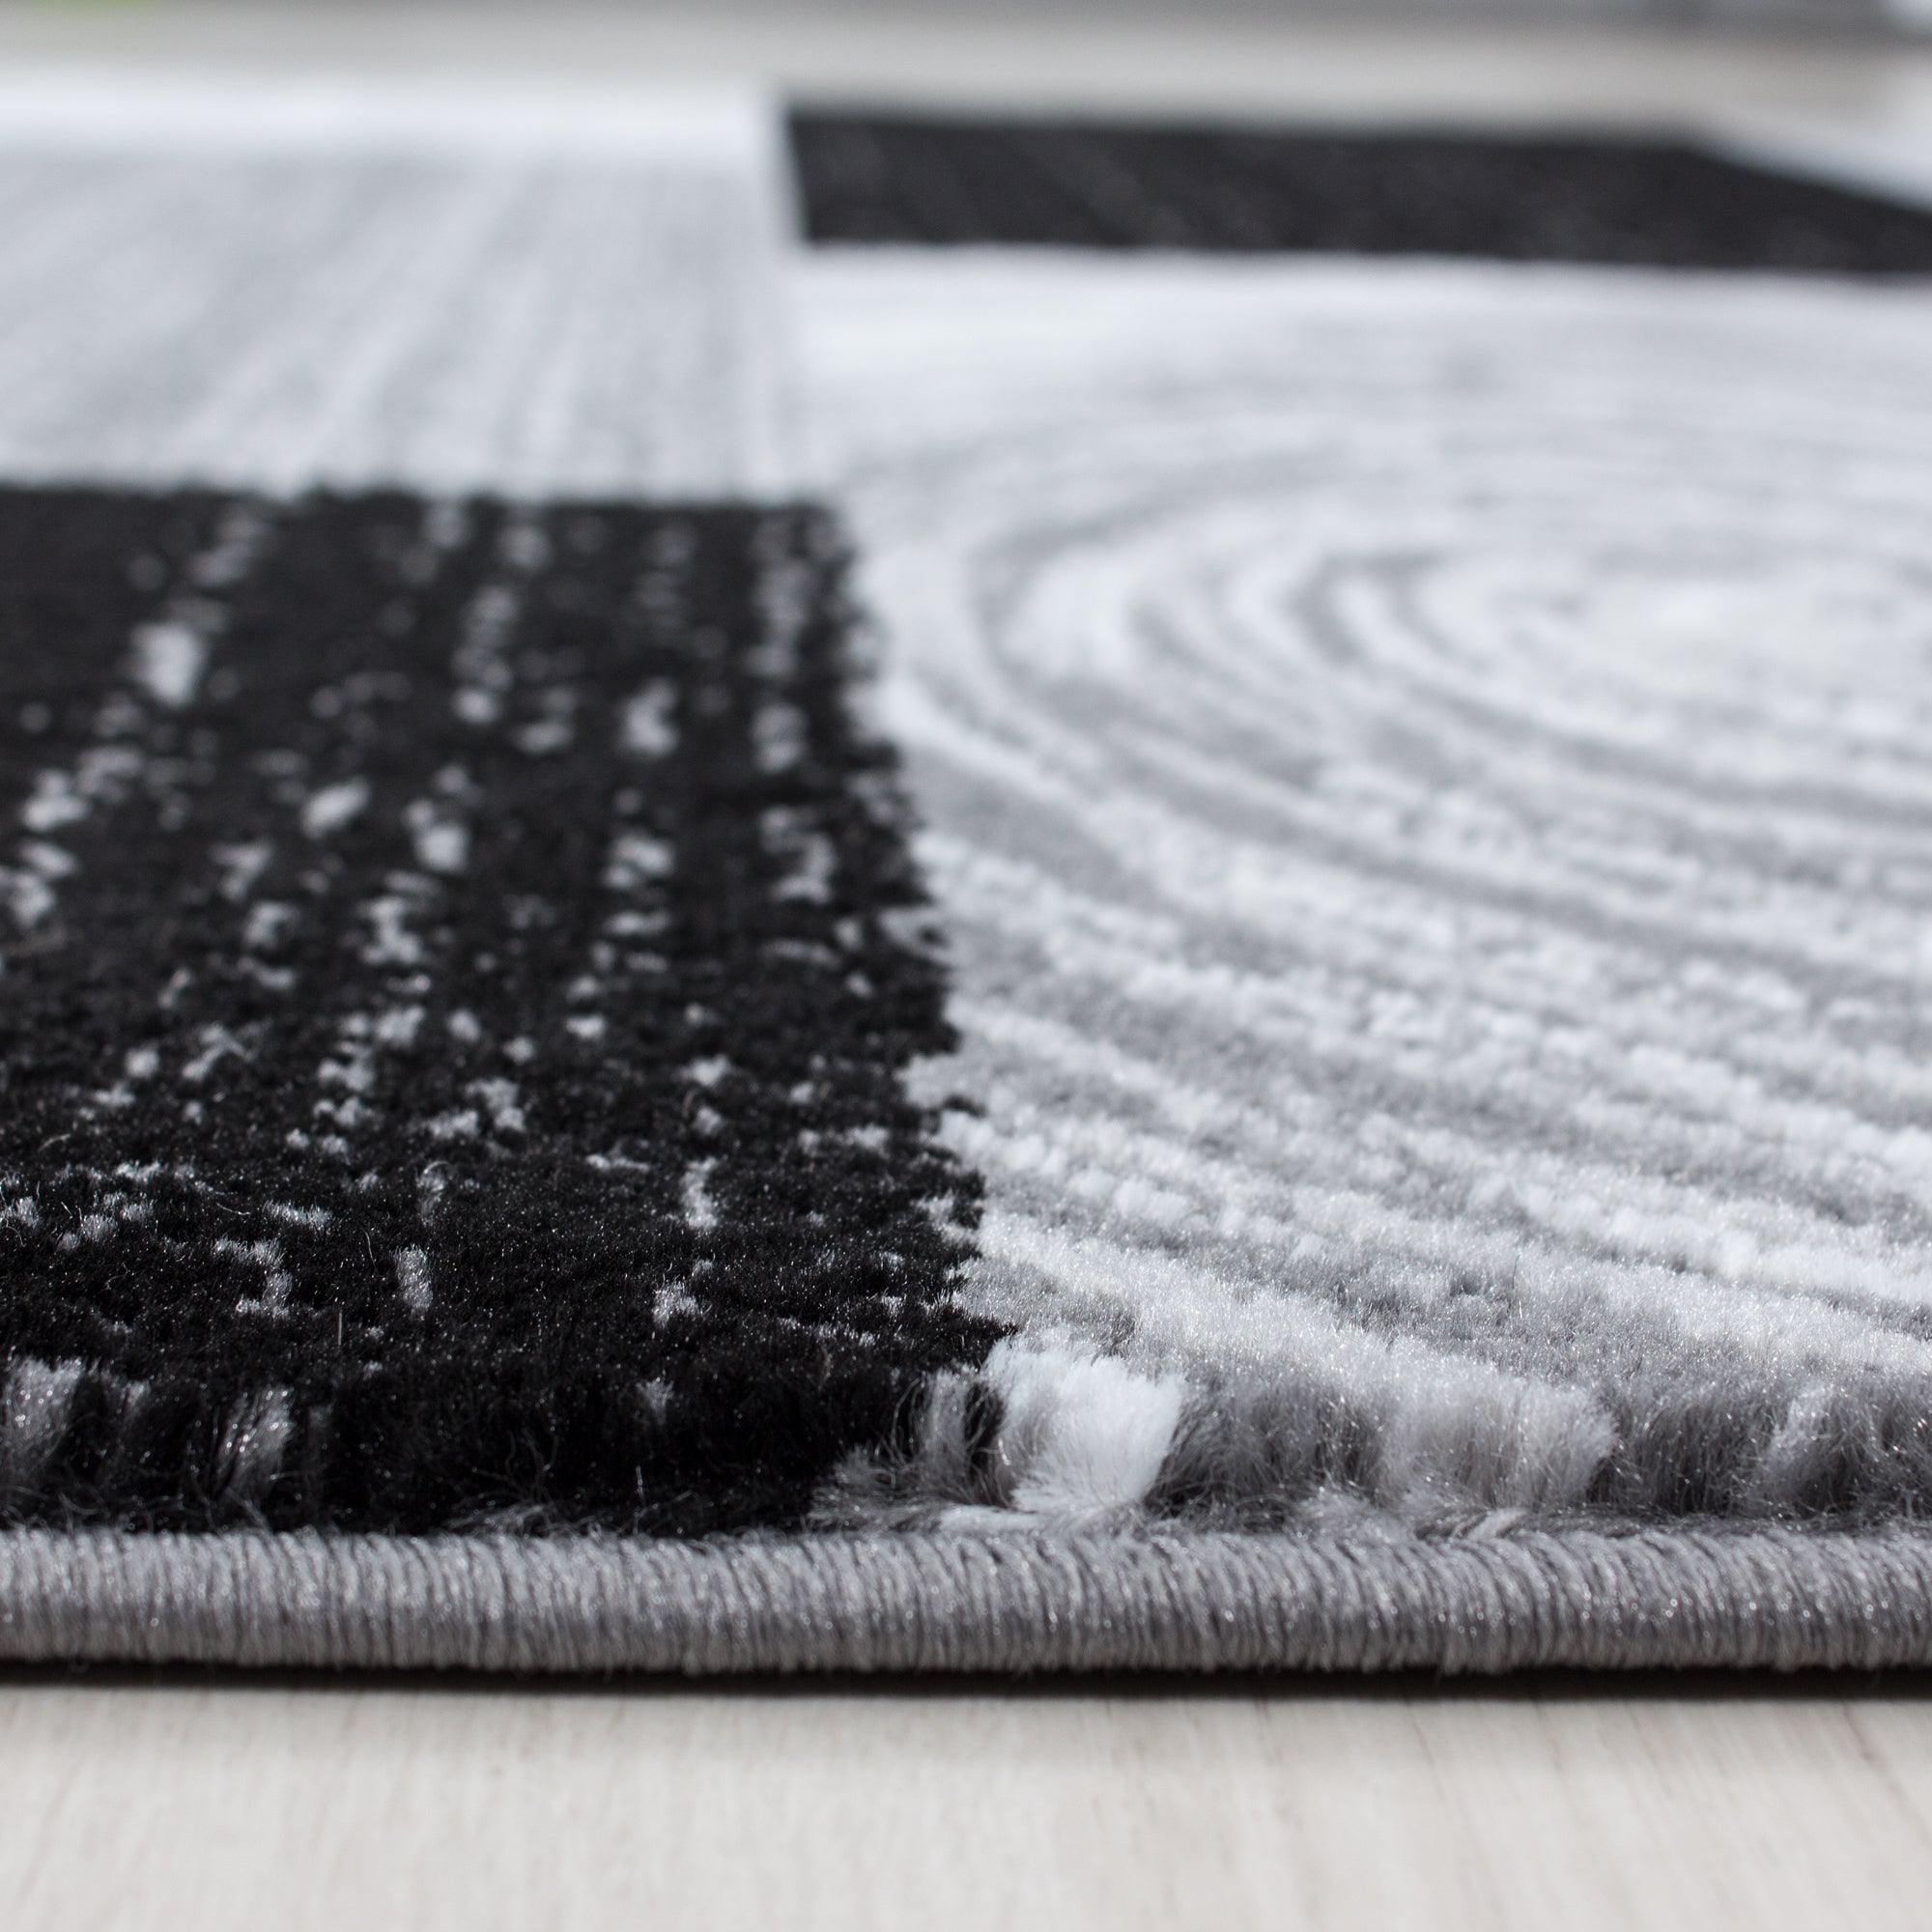 Teppich Kurzflor mit Muster - moderner Designer Teppich - abstraktes Muster Karo Patchwork - Schwarz Grau Meliert